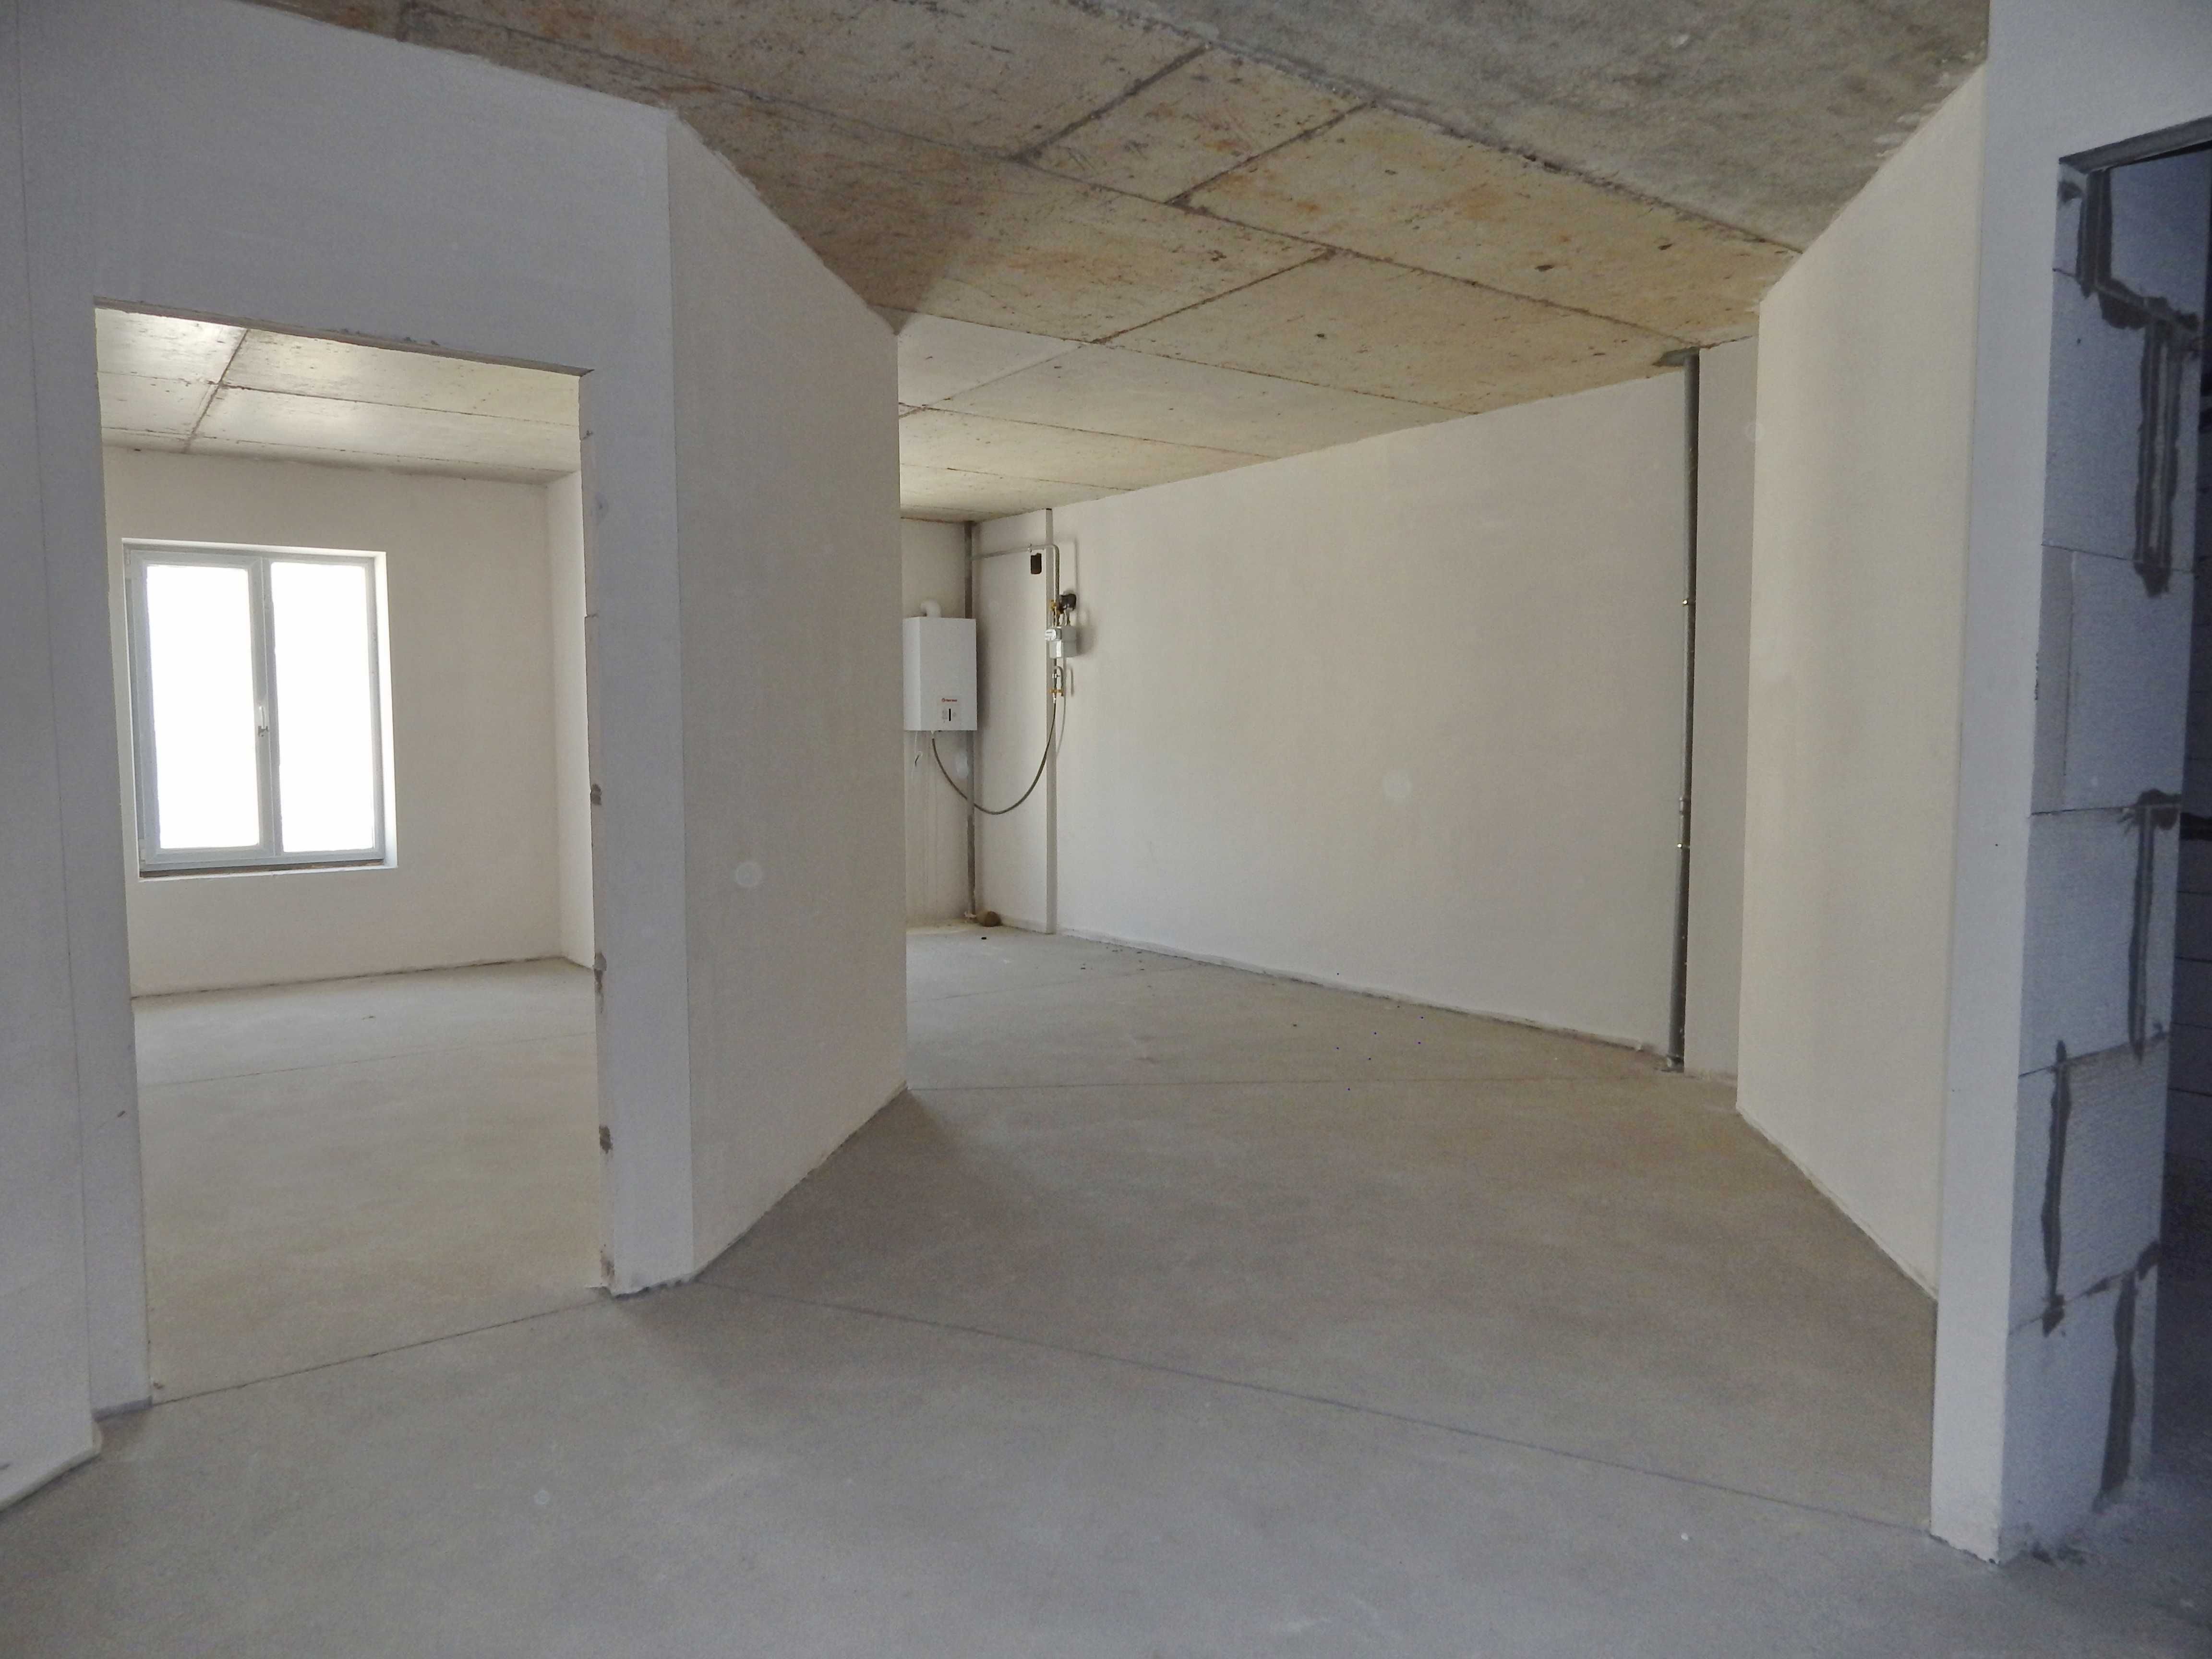 Продам 2-х комнатную квартиру в ЖК Via Roma со своим отоплением